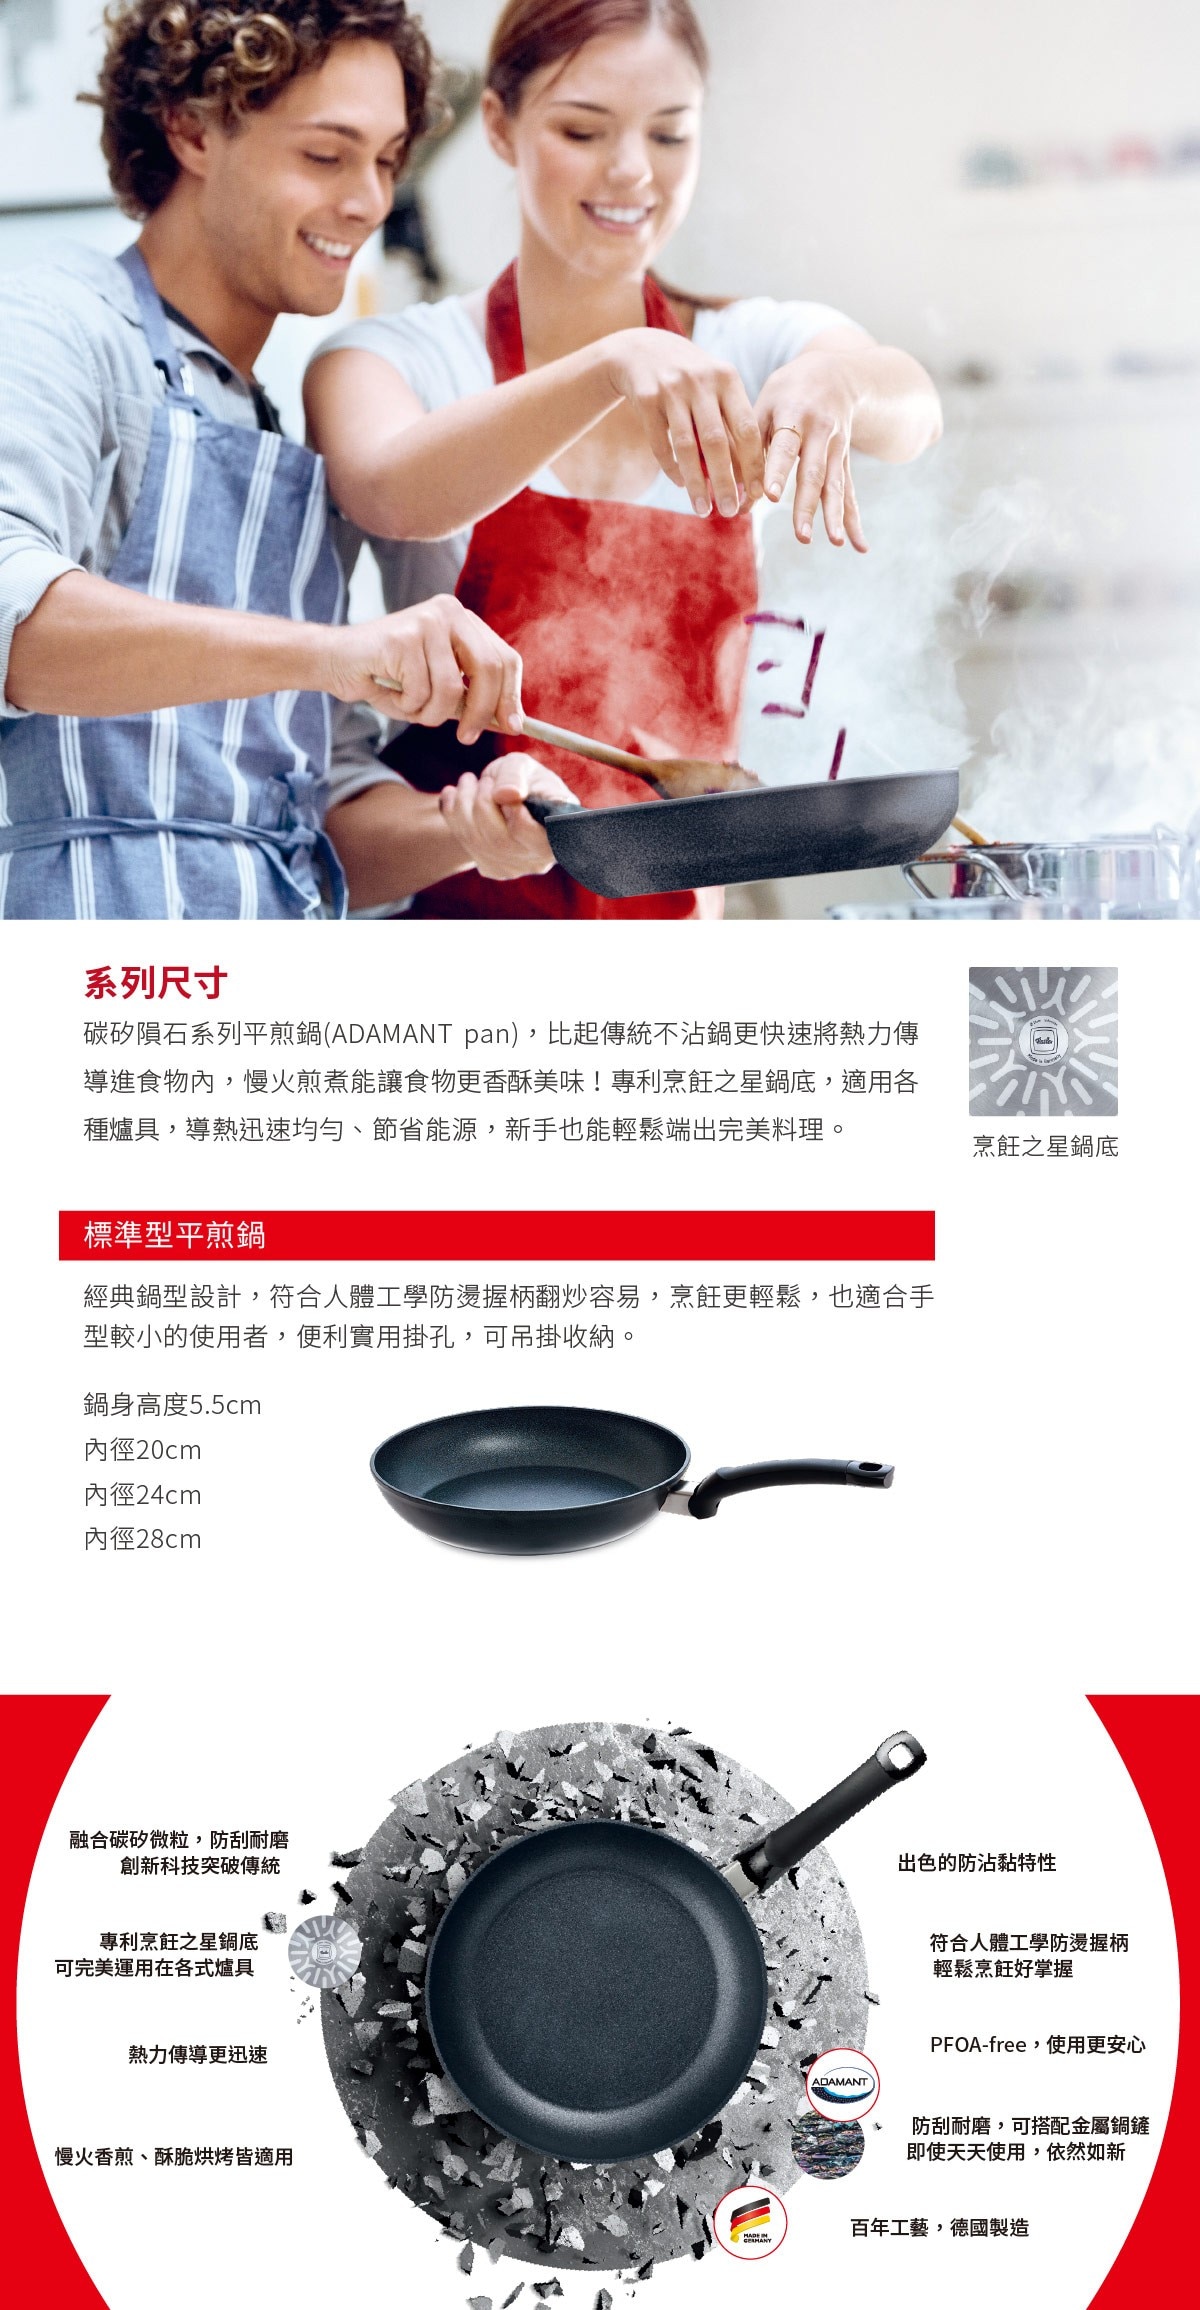 FISSLER 碳矽隕石系列 不沾平底鍋，創新科技在塗層中融合碳矽微粒，使鍋具有著絕佳的防刮保護，具有優越的導熱性。